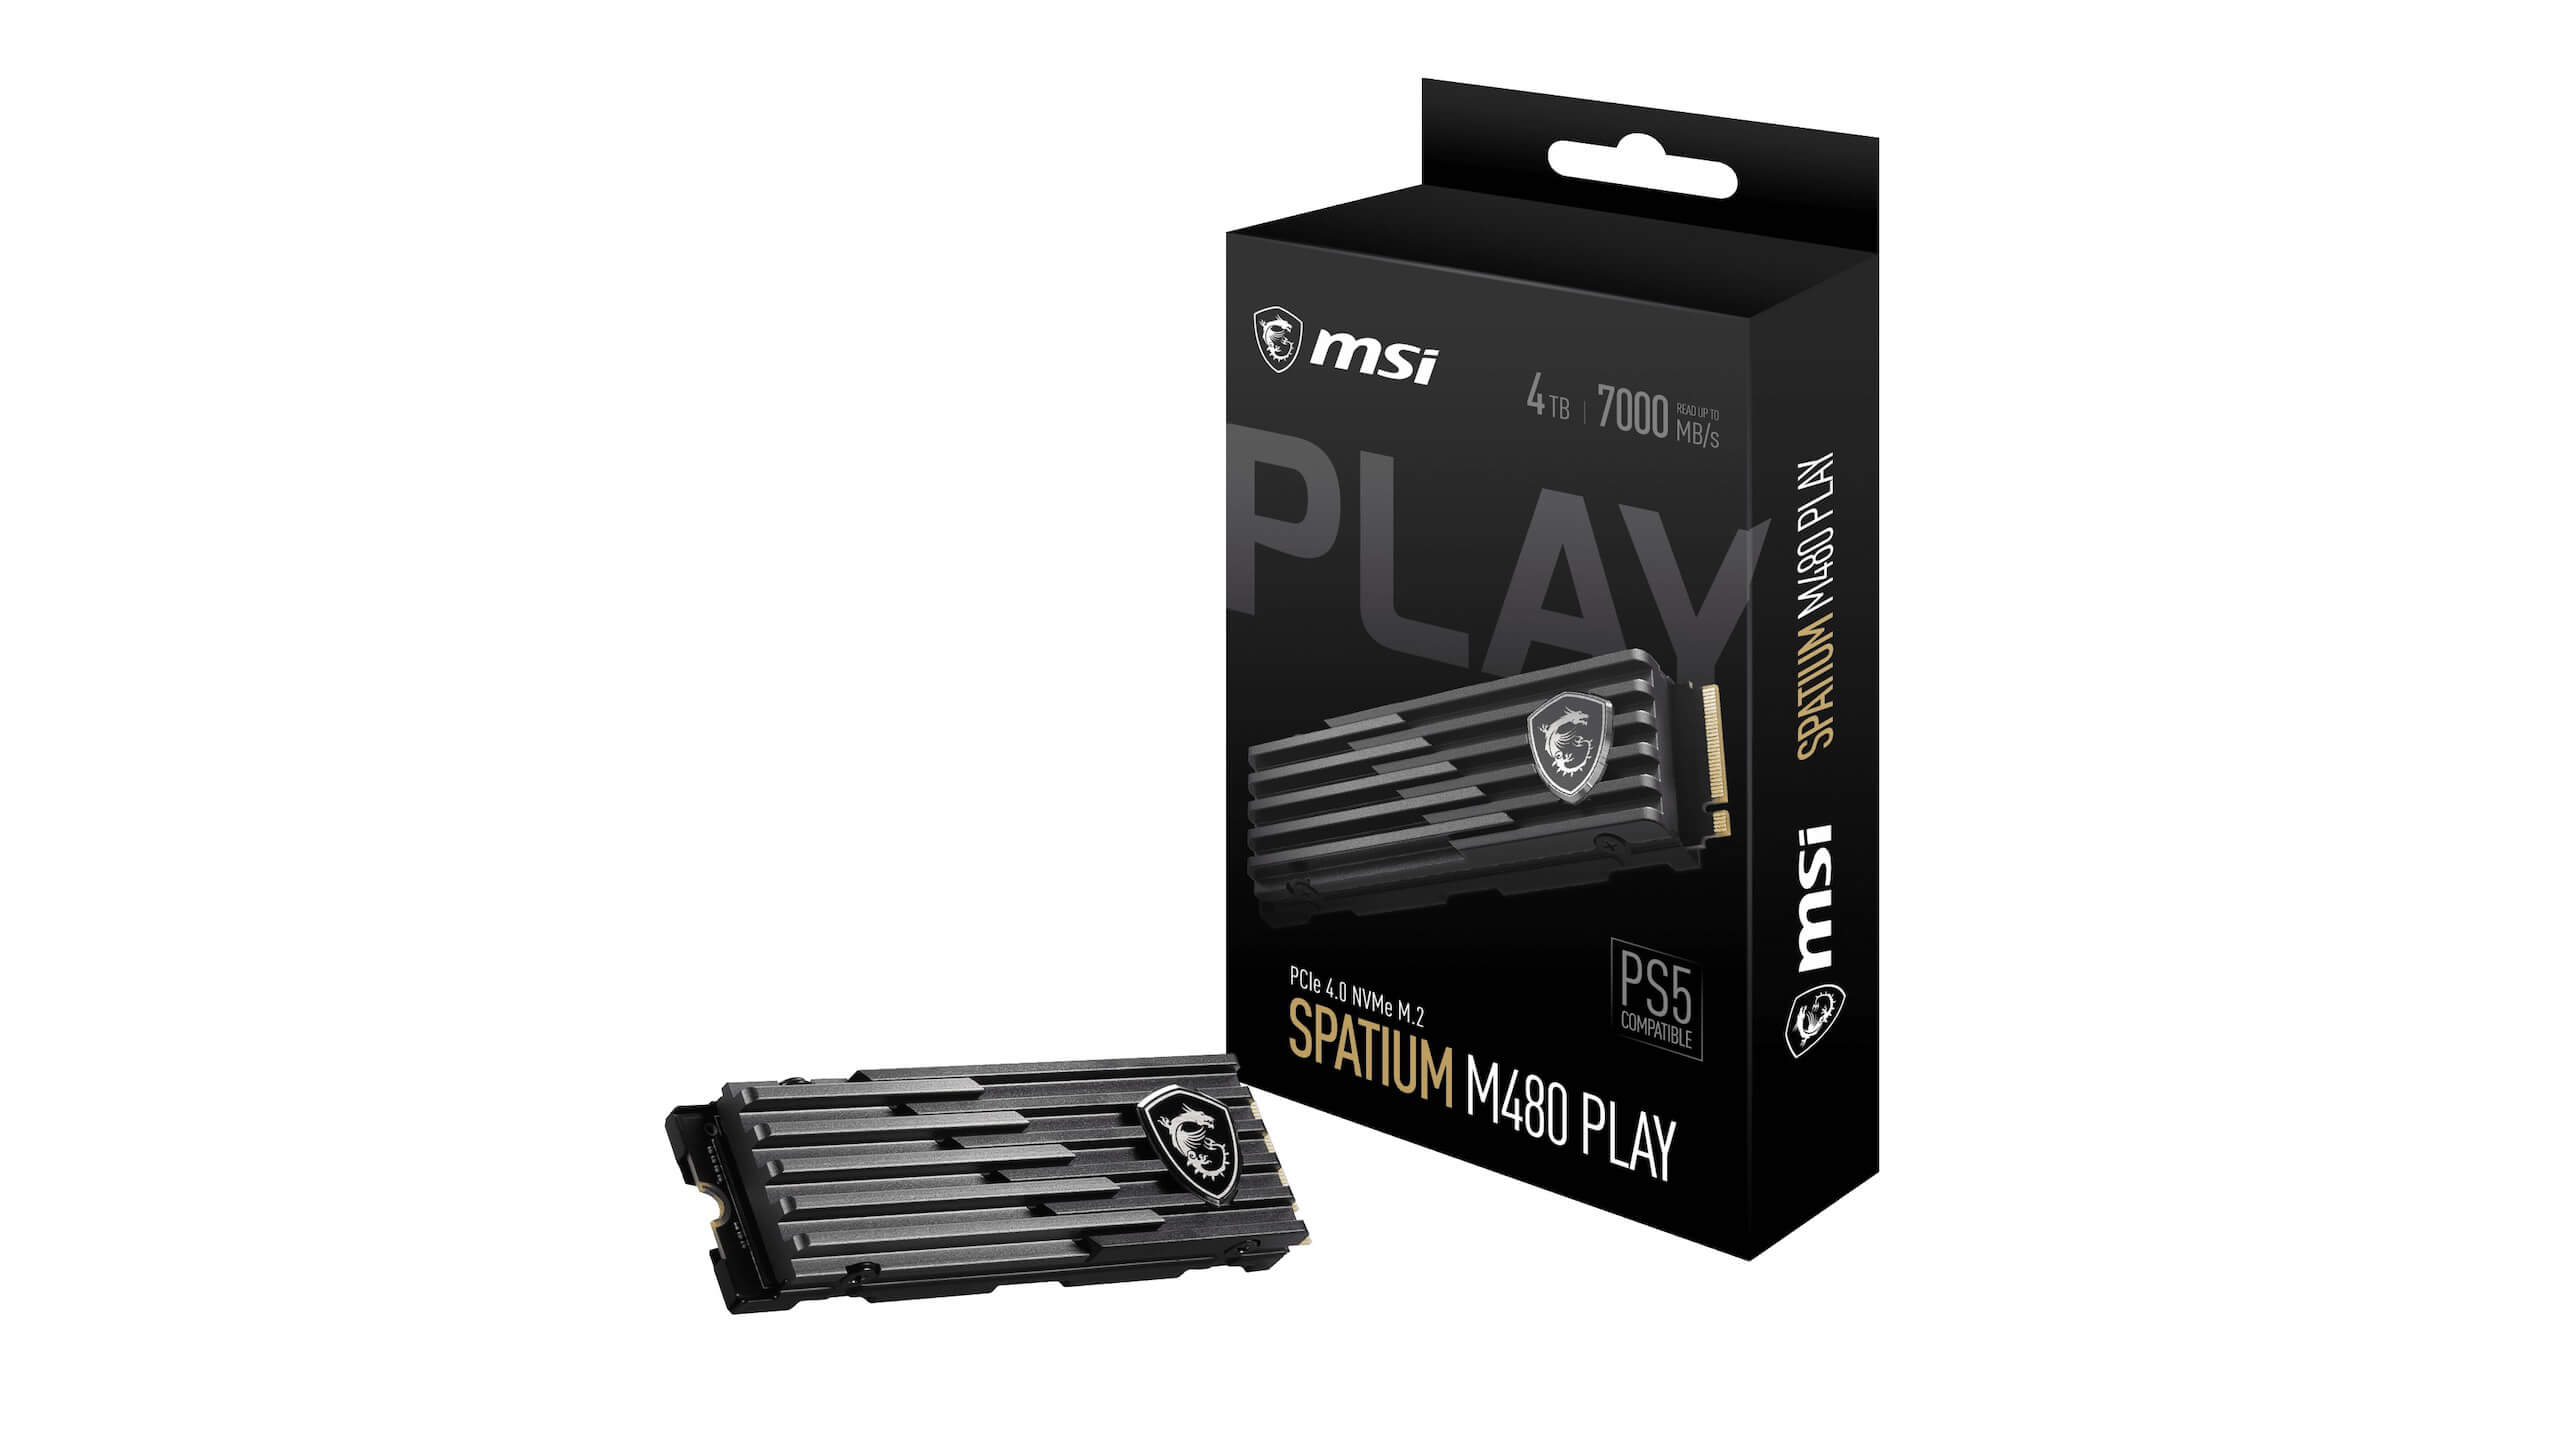 MSI Spatium M480 Pro Play